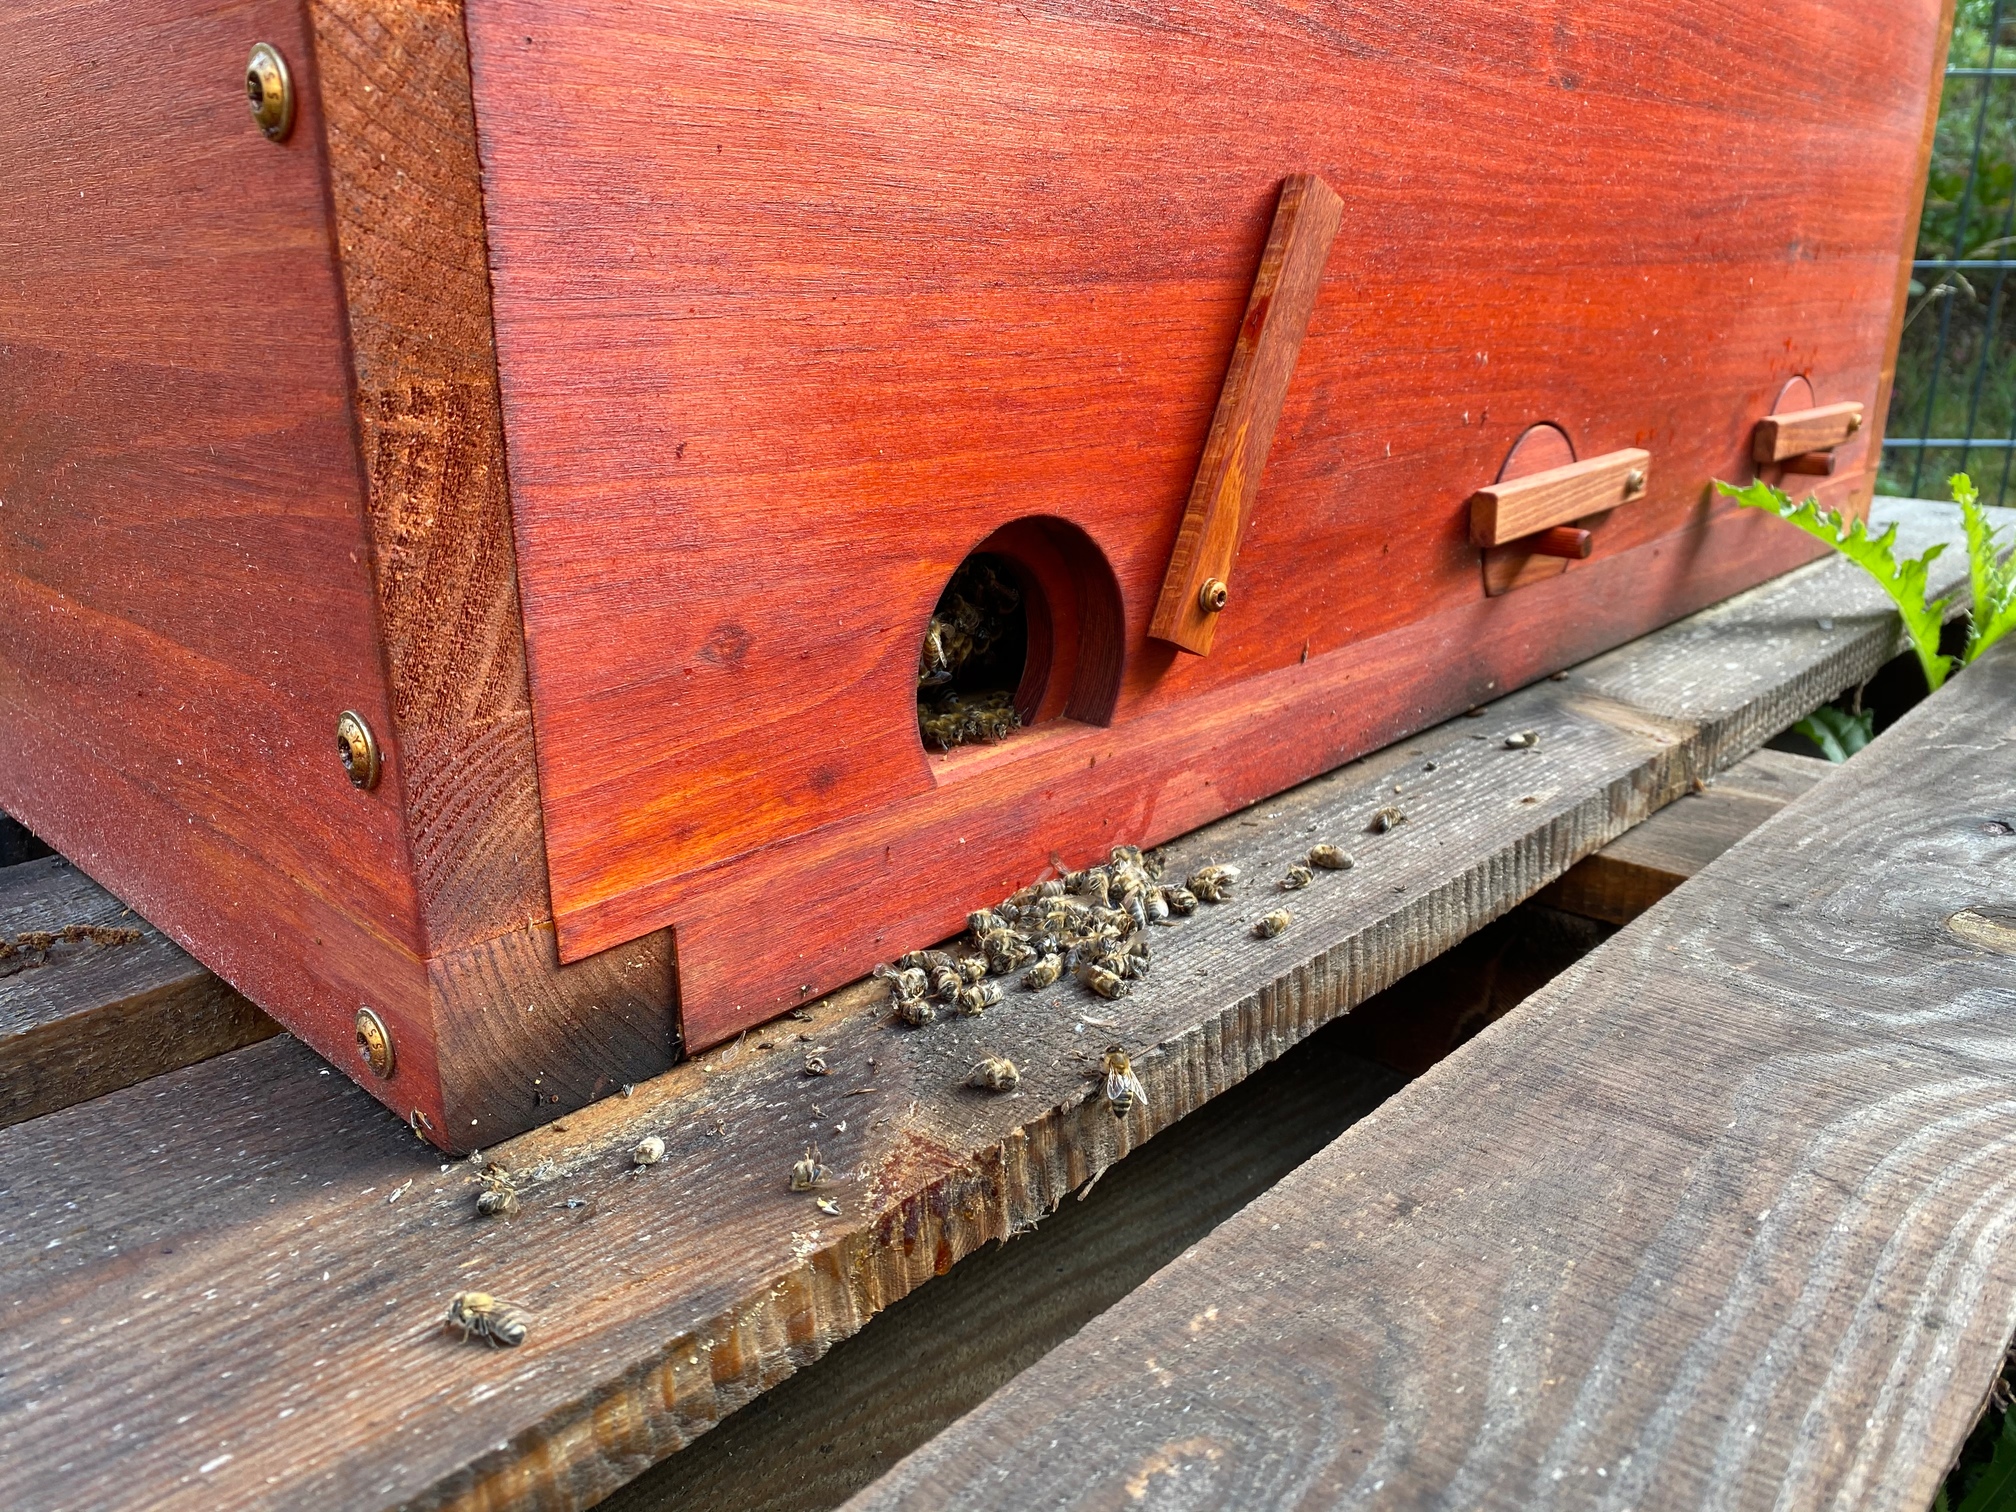 AS Behandlung tote Bienen vor Flugloch. Was ist normal? - Anfänger